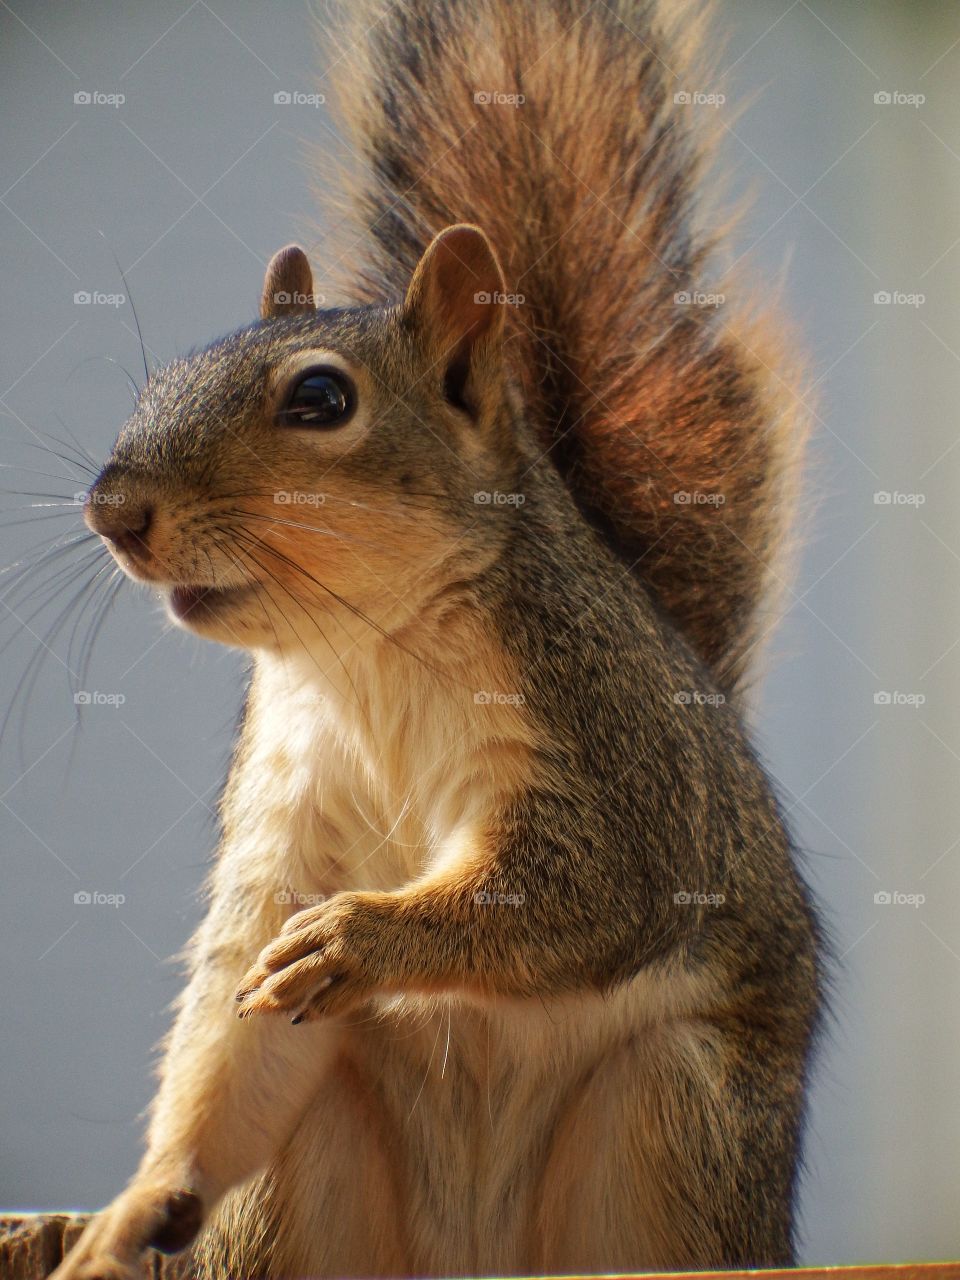 cute up close squirrel picture